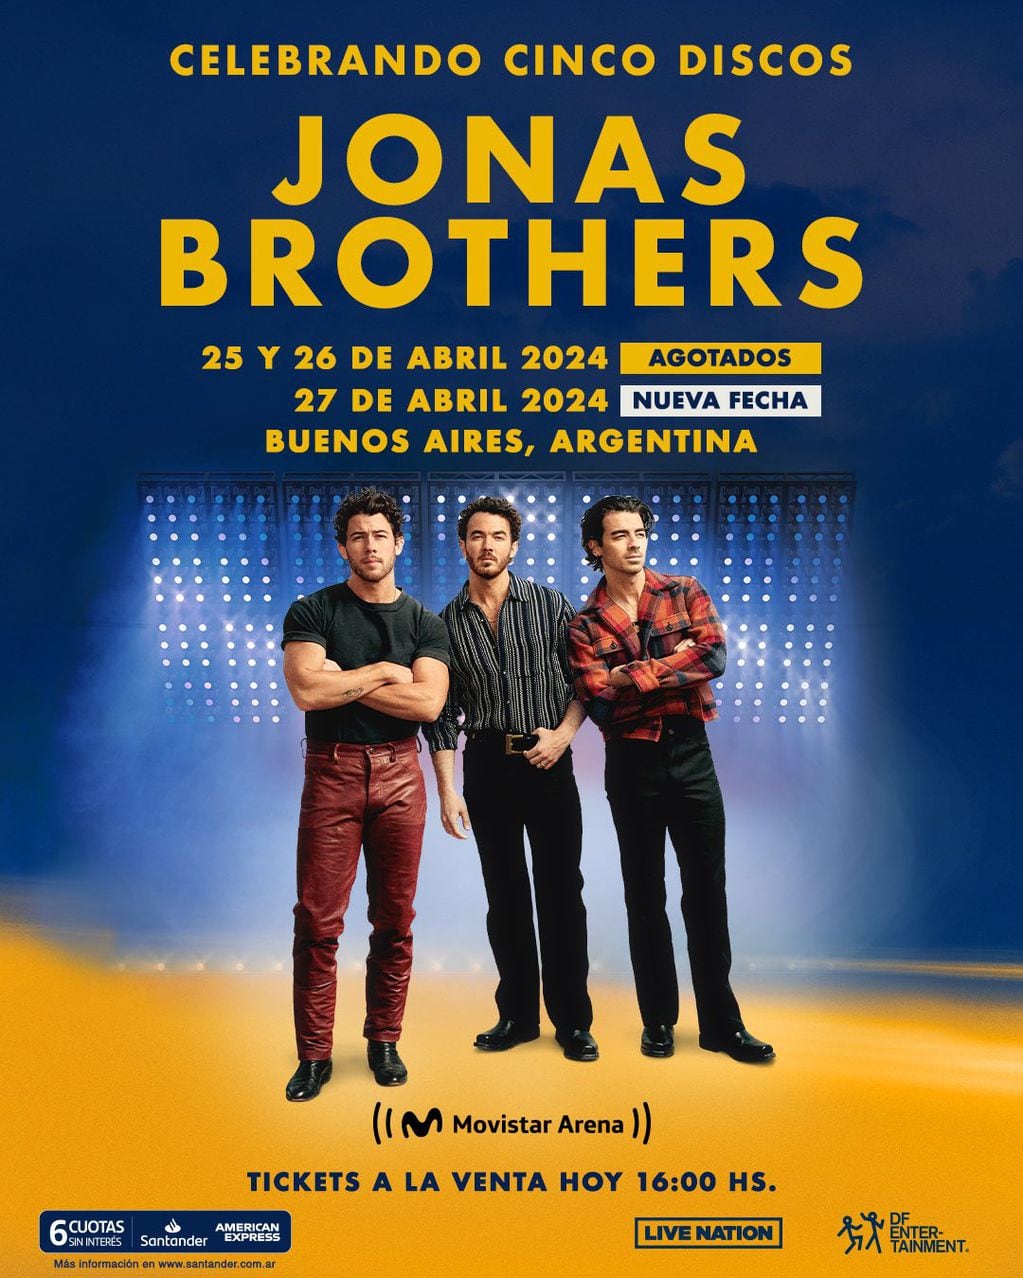 Furor por los Jonas Brothers en Argentina: agregaron una tercera fecha, ¿cuánto cuestan las entradas?